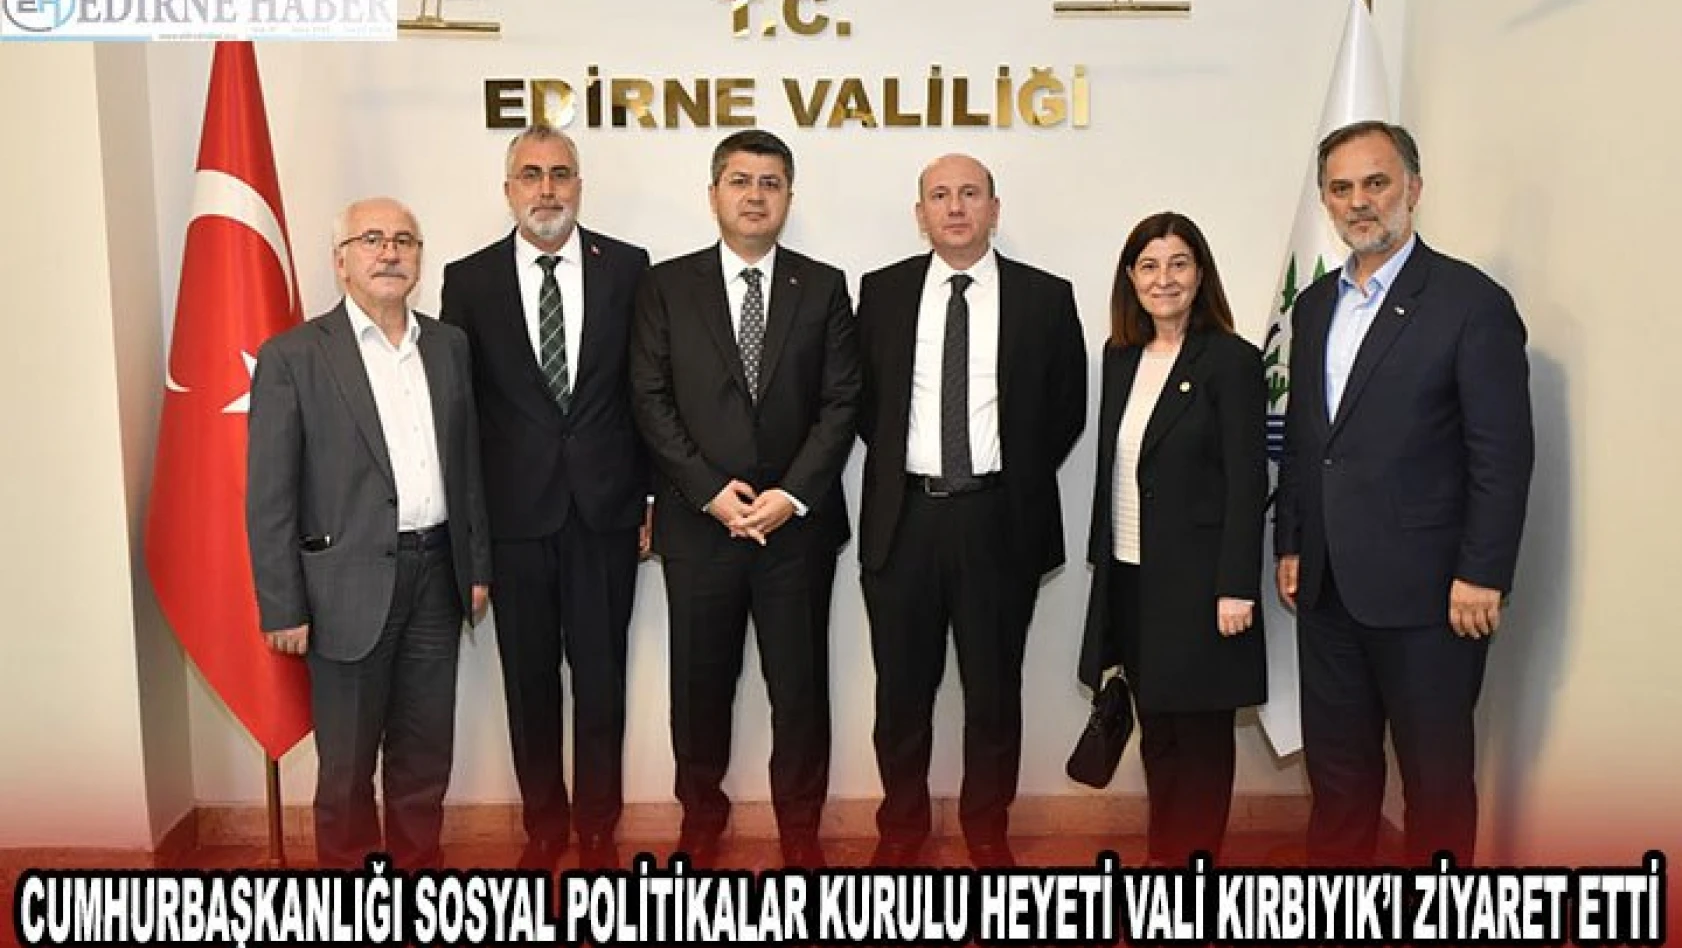 Cumhurbaşkanlığı Sosyal Politikalar Kurulu heyeti Vali Kırbıyık'ı ziyaret etti